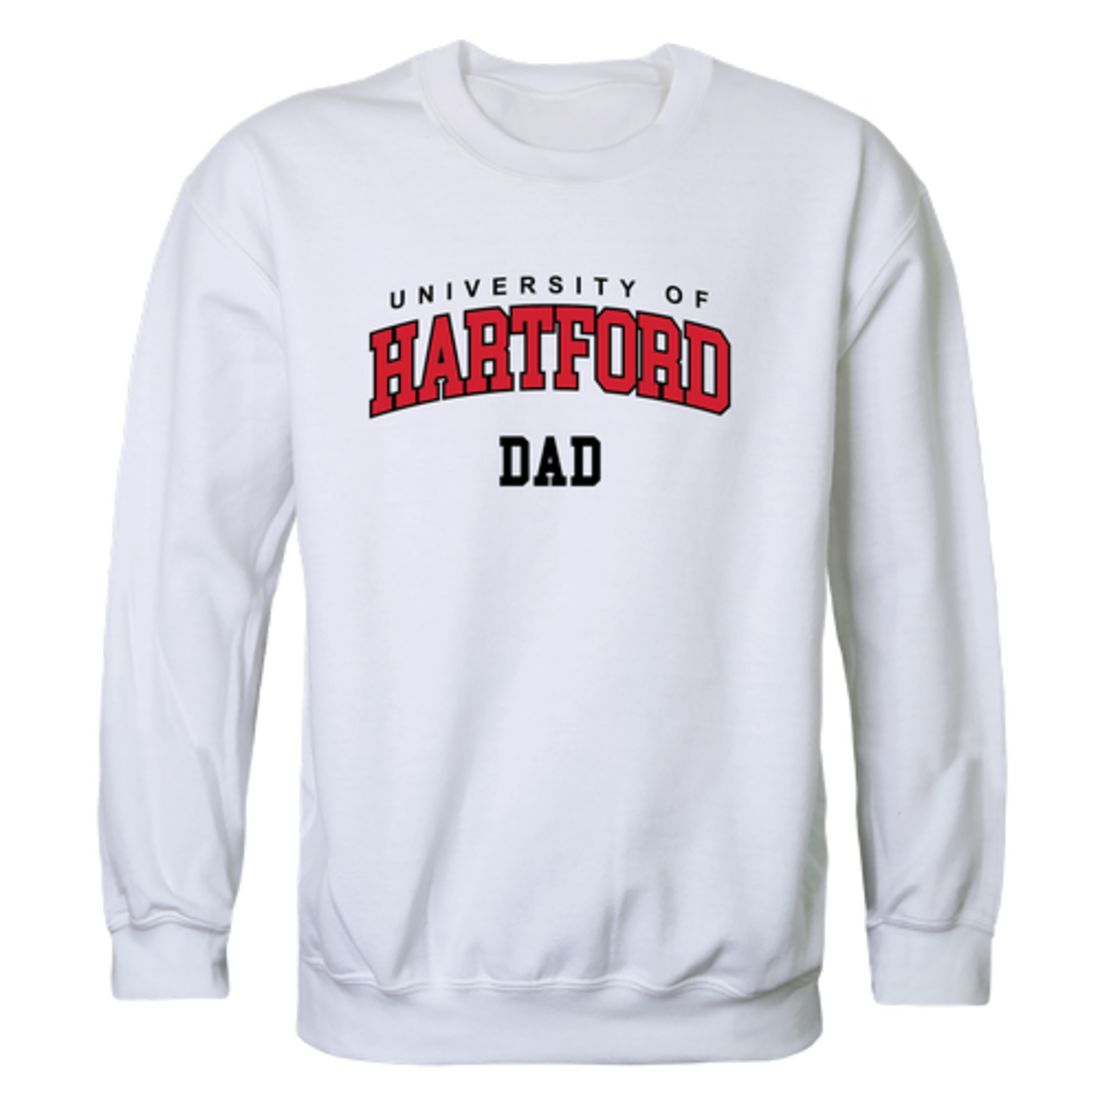 University of Hartford Hawks Dad Fleece Crewneck Pullover Sweatshirt Heather Grey-Campus-Wardrobe